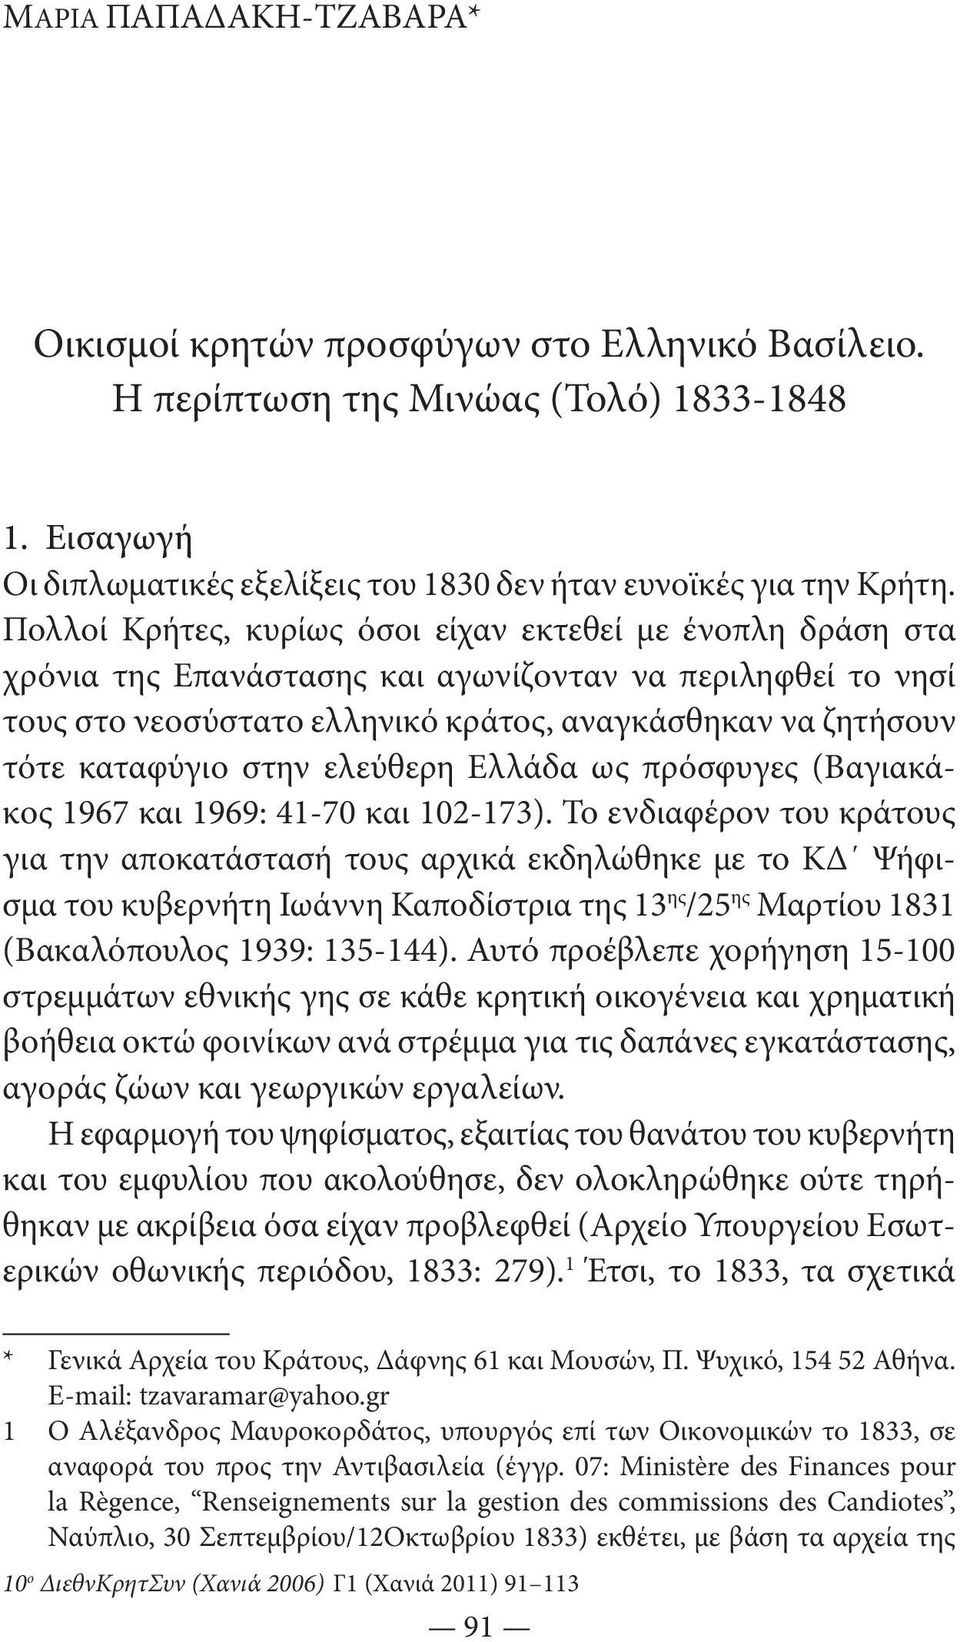 στην ελεύθερη Ελλάδα ως πρόσφυγες (Βαγιακάκος 1967 και 1969: 41-70 και 102-173).